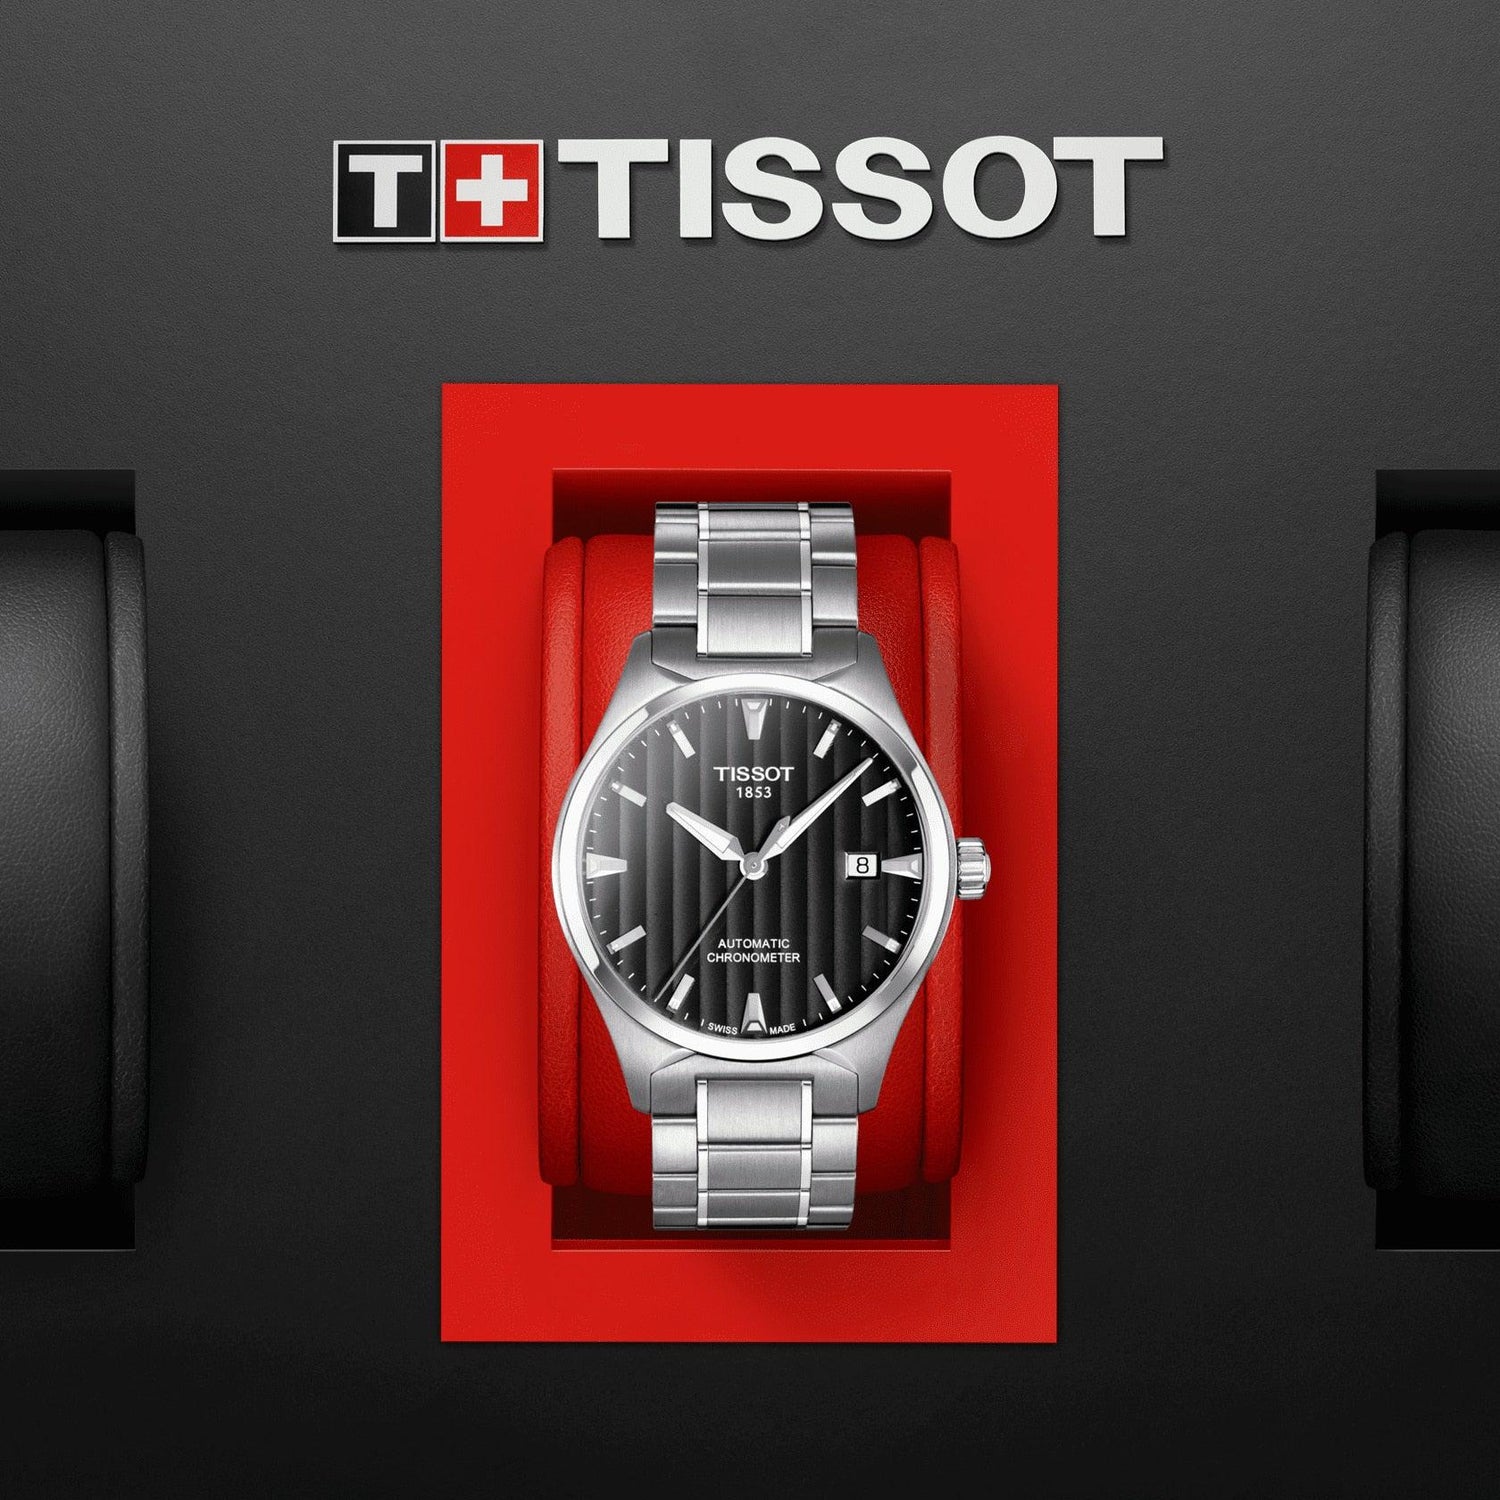 Tissot T-Tempo Automatic COSC